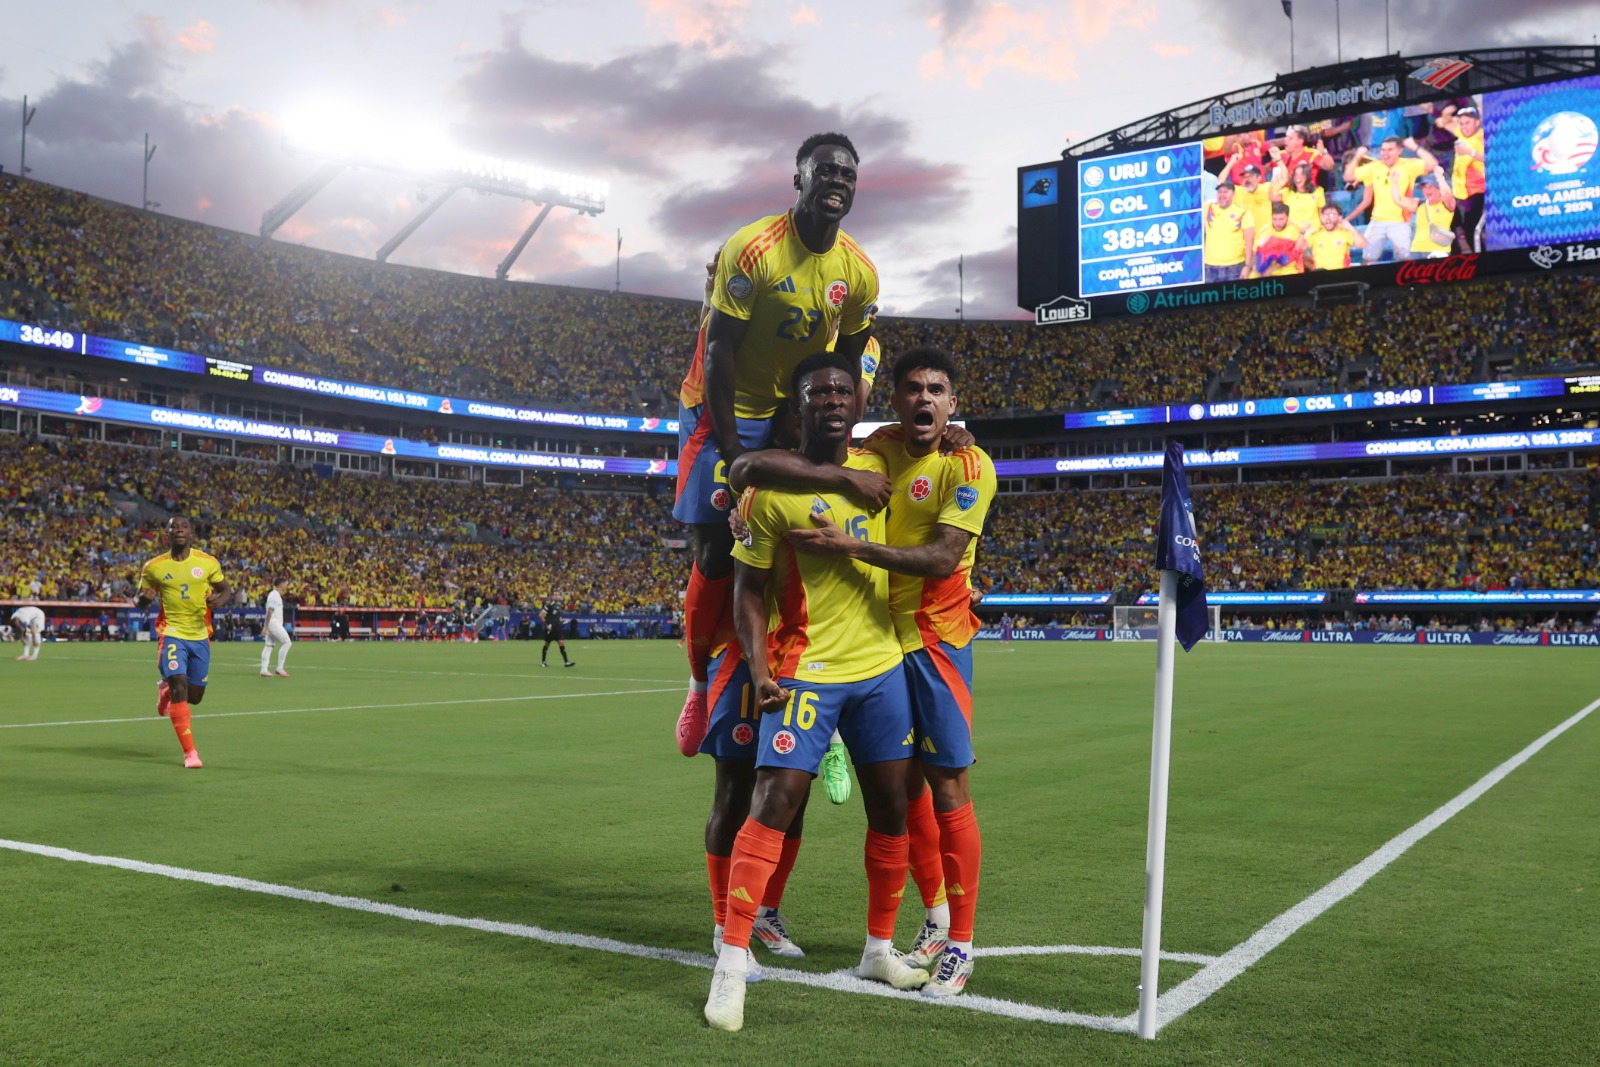 Colômbia bate Uruguai e volta a final da Copa América após 23 anos (Foto: Tim Nwachukwu/Getty Images)